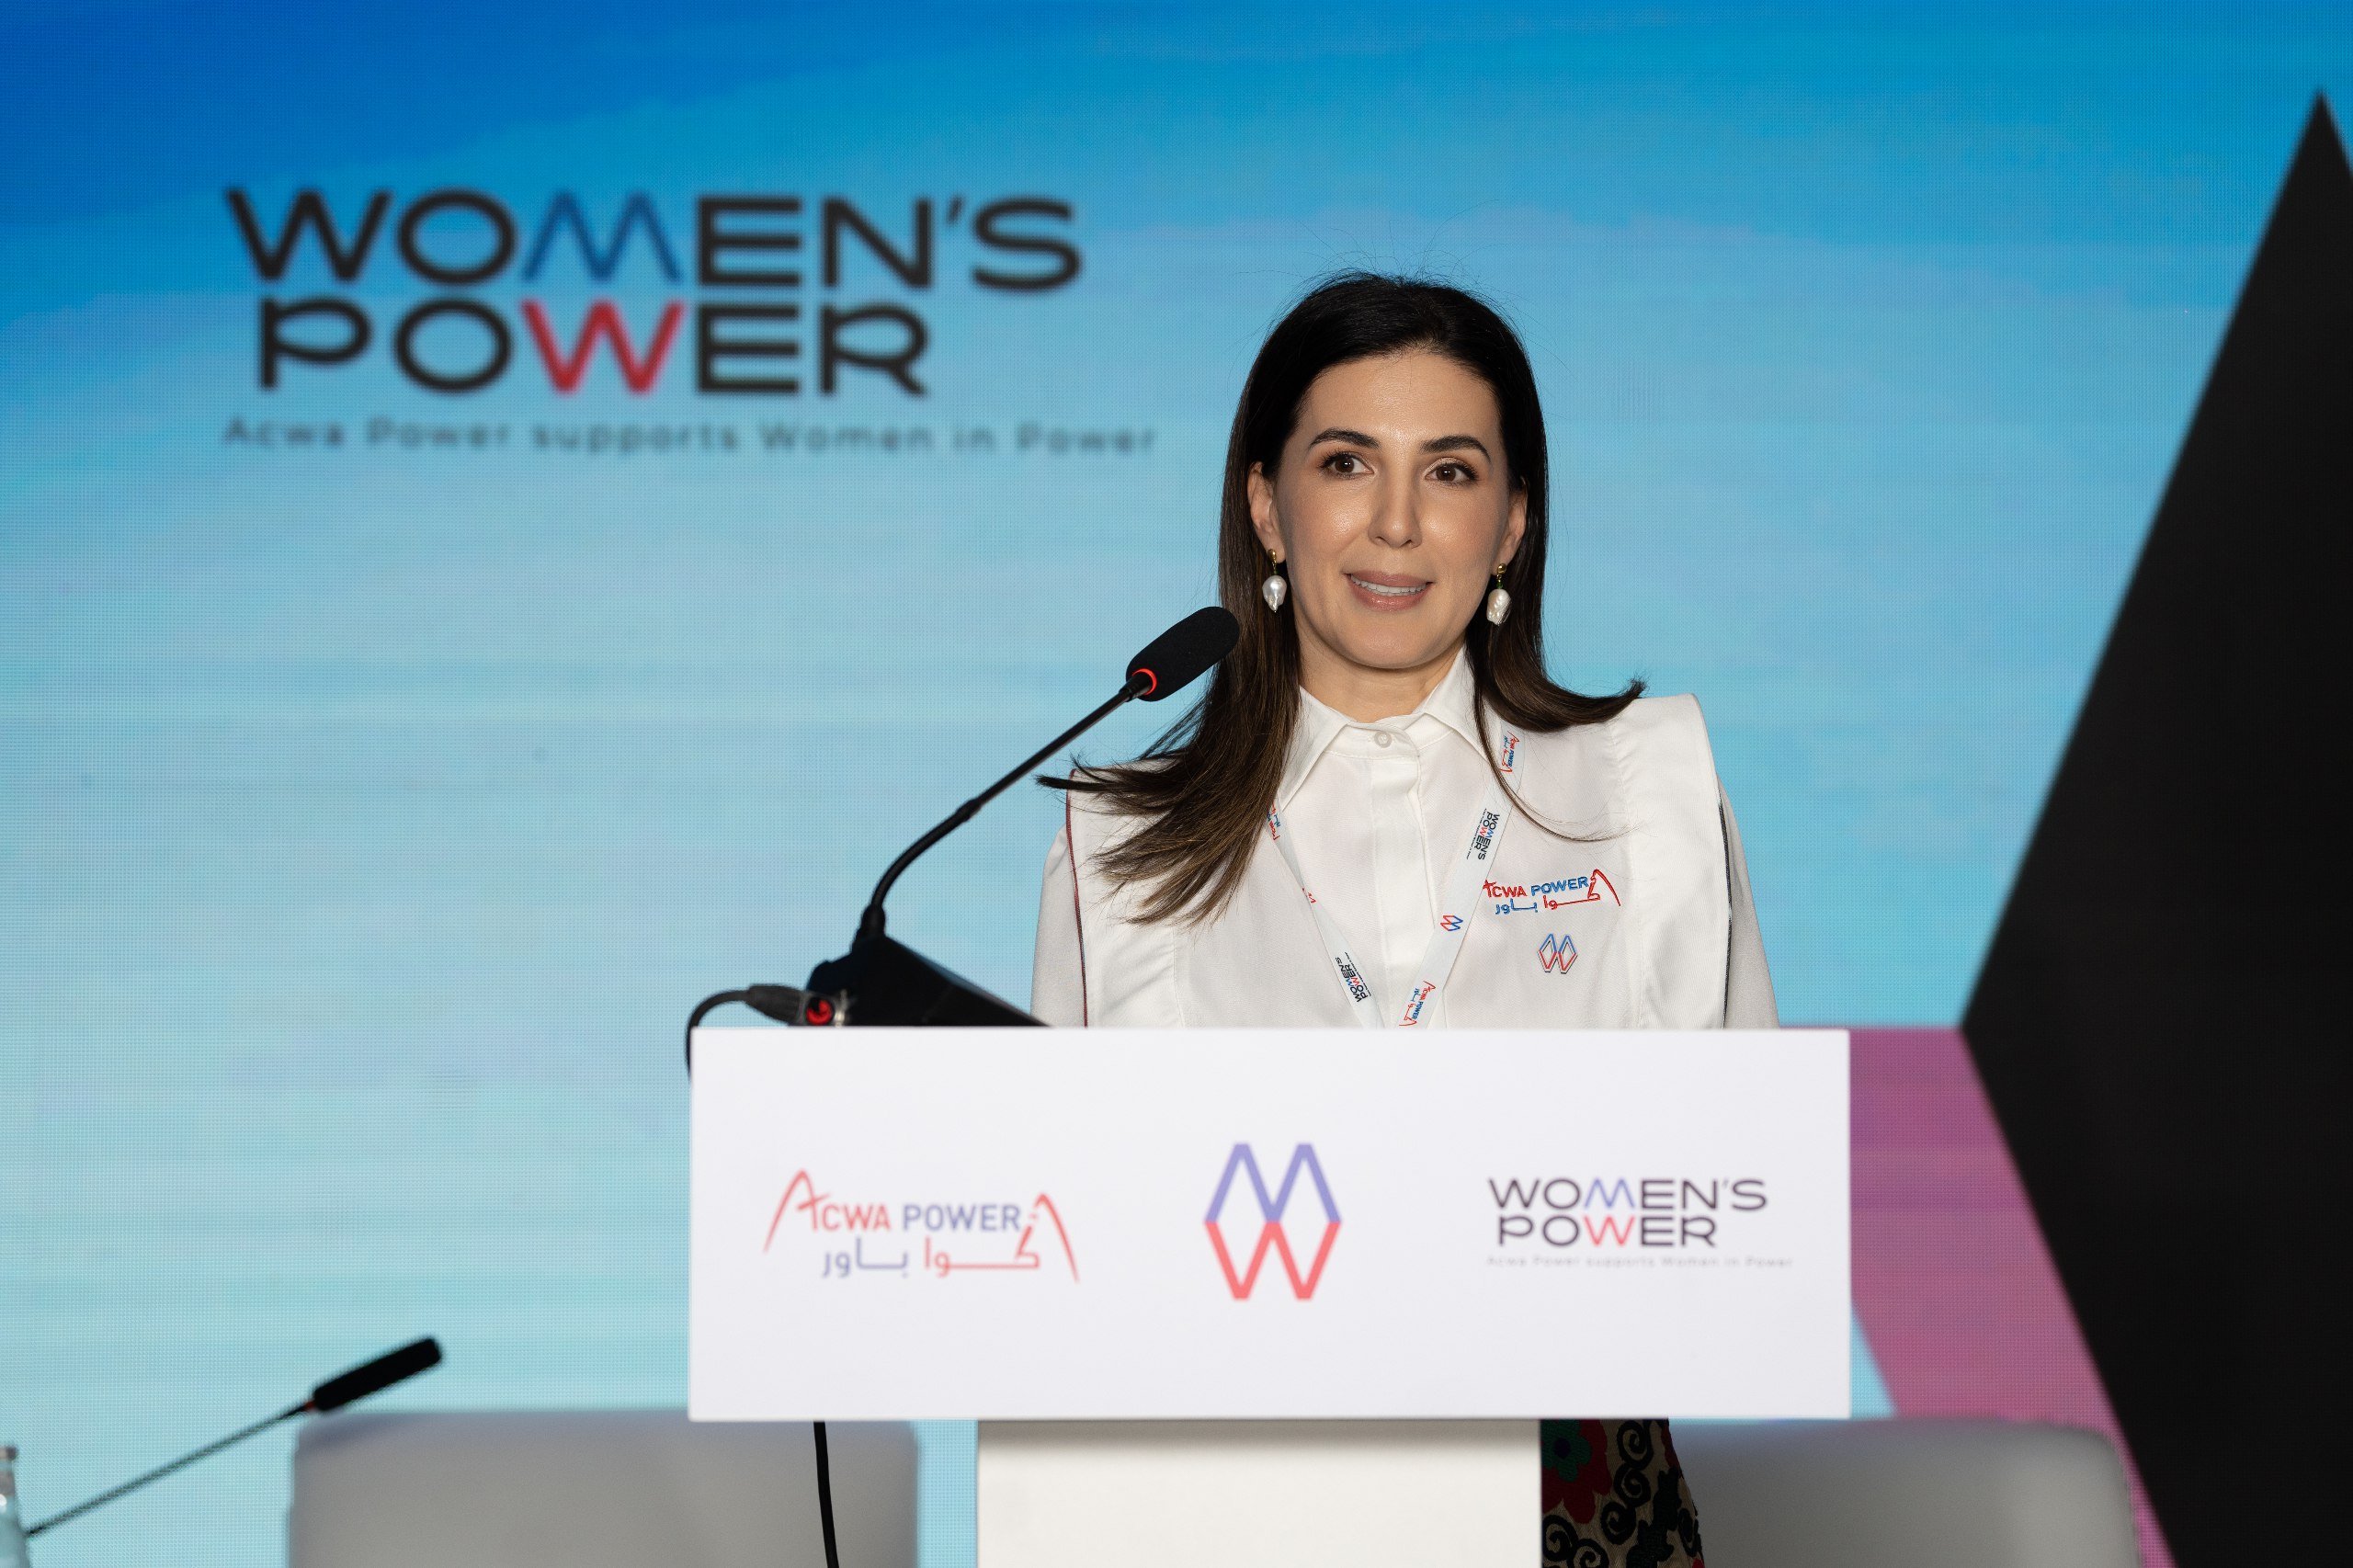 Первый региональный форум Women in Power прошел в Ташкенте по инициативе ACWA Power